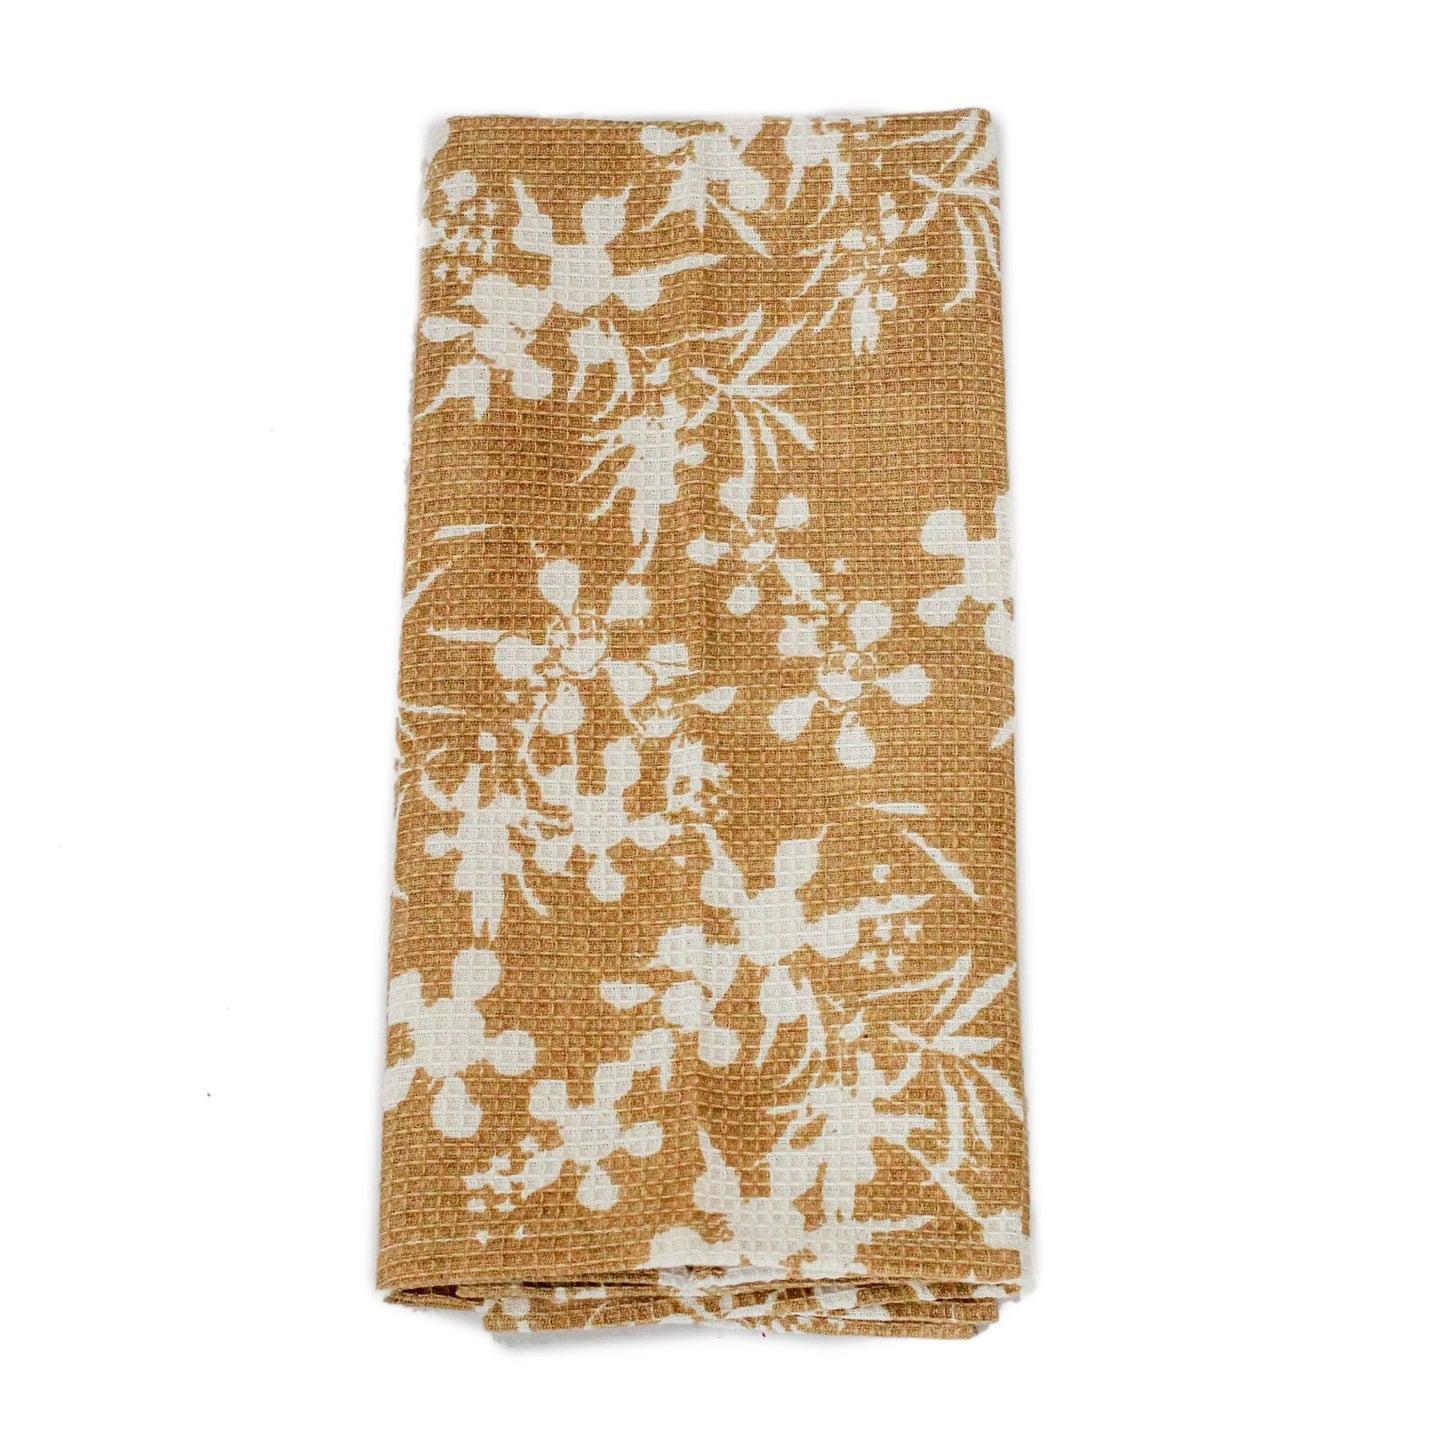 Honeycomb Myrtle Tea Towel